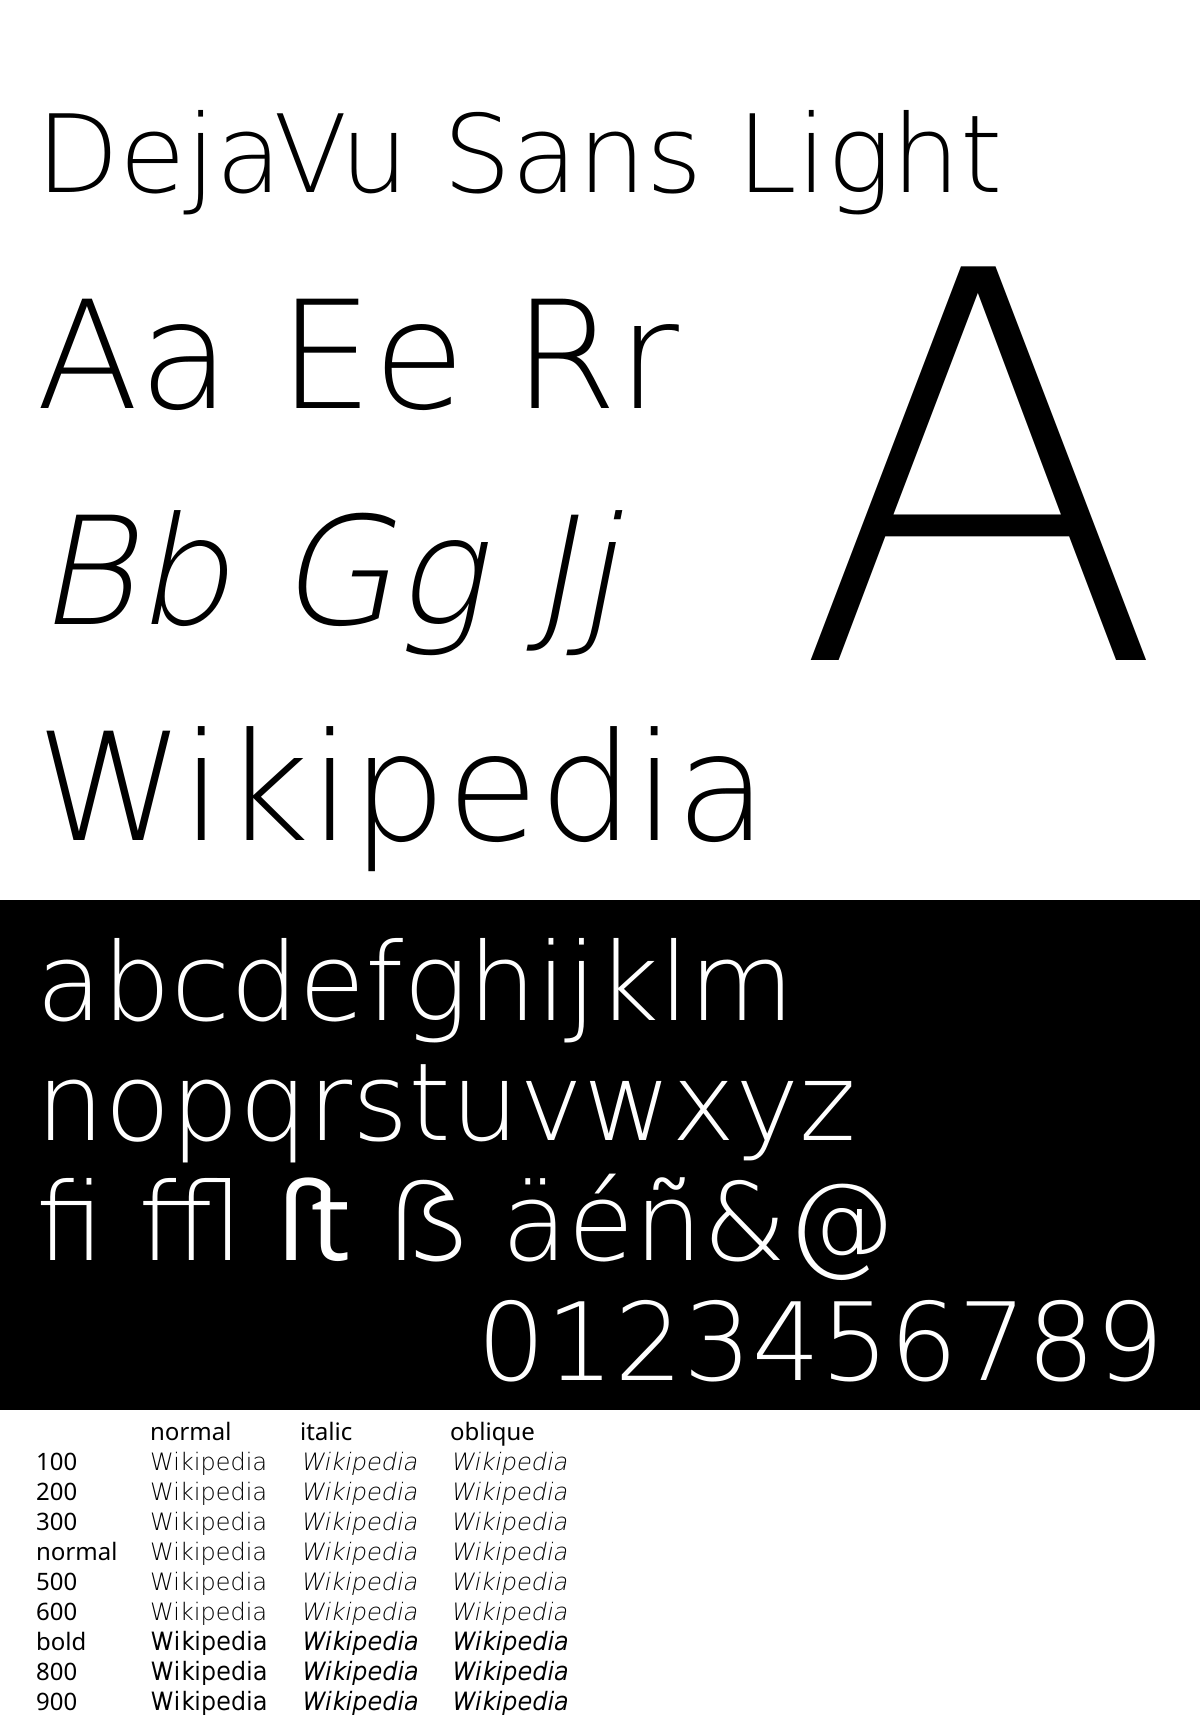 Шрифт Dejavu Sans. Ubuntu Light шрифт. Ubuntu font Family. Font Weight.